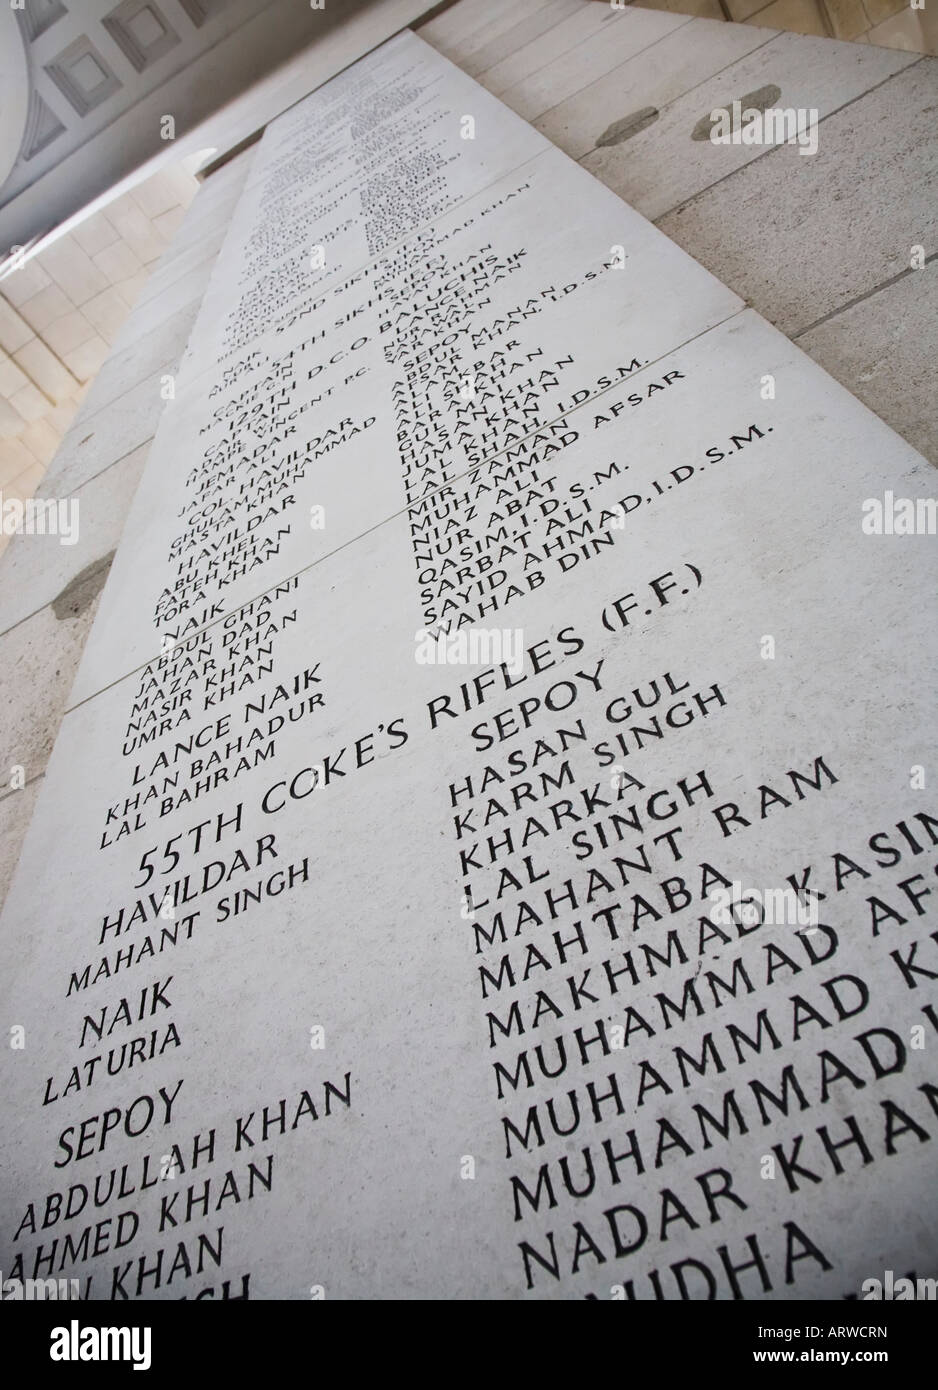 Les noms des morts de guerre de troupes du 55e Coke's Rifles partie de l'armée indienne britannique inscrite dans la porte de Menin, Ypres, Belgique Banque D'Images